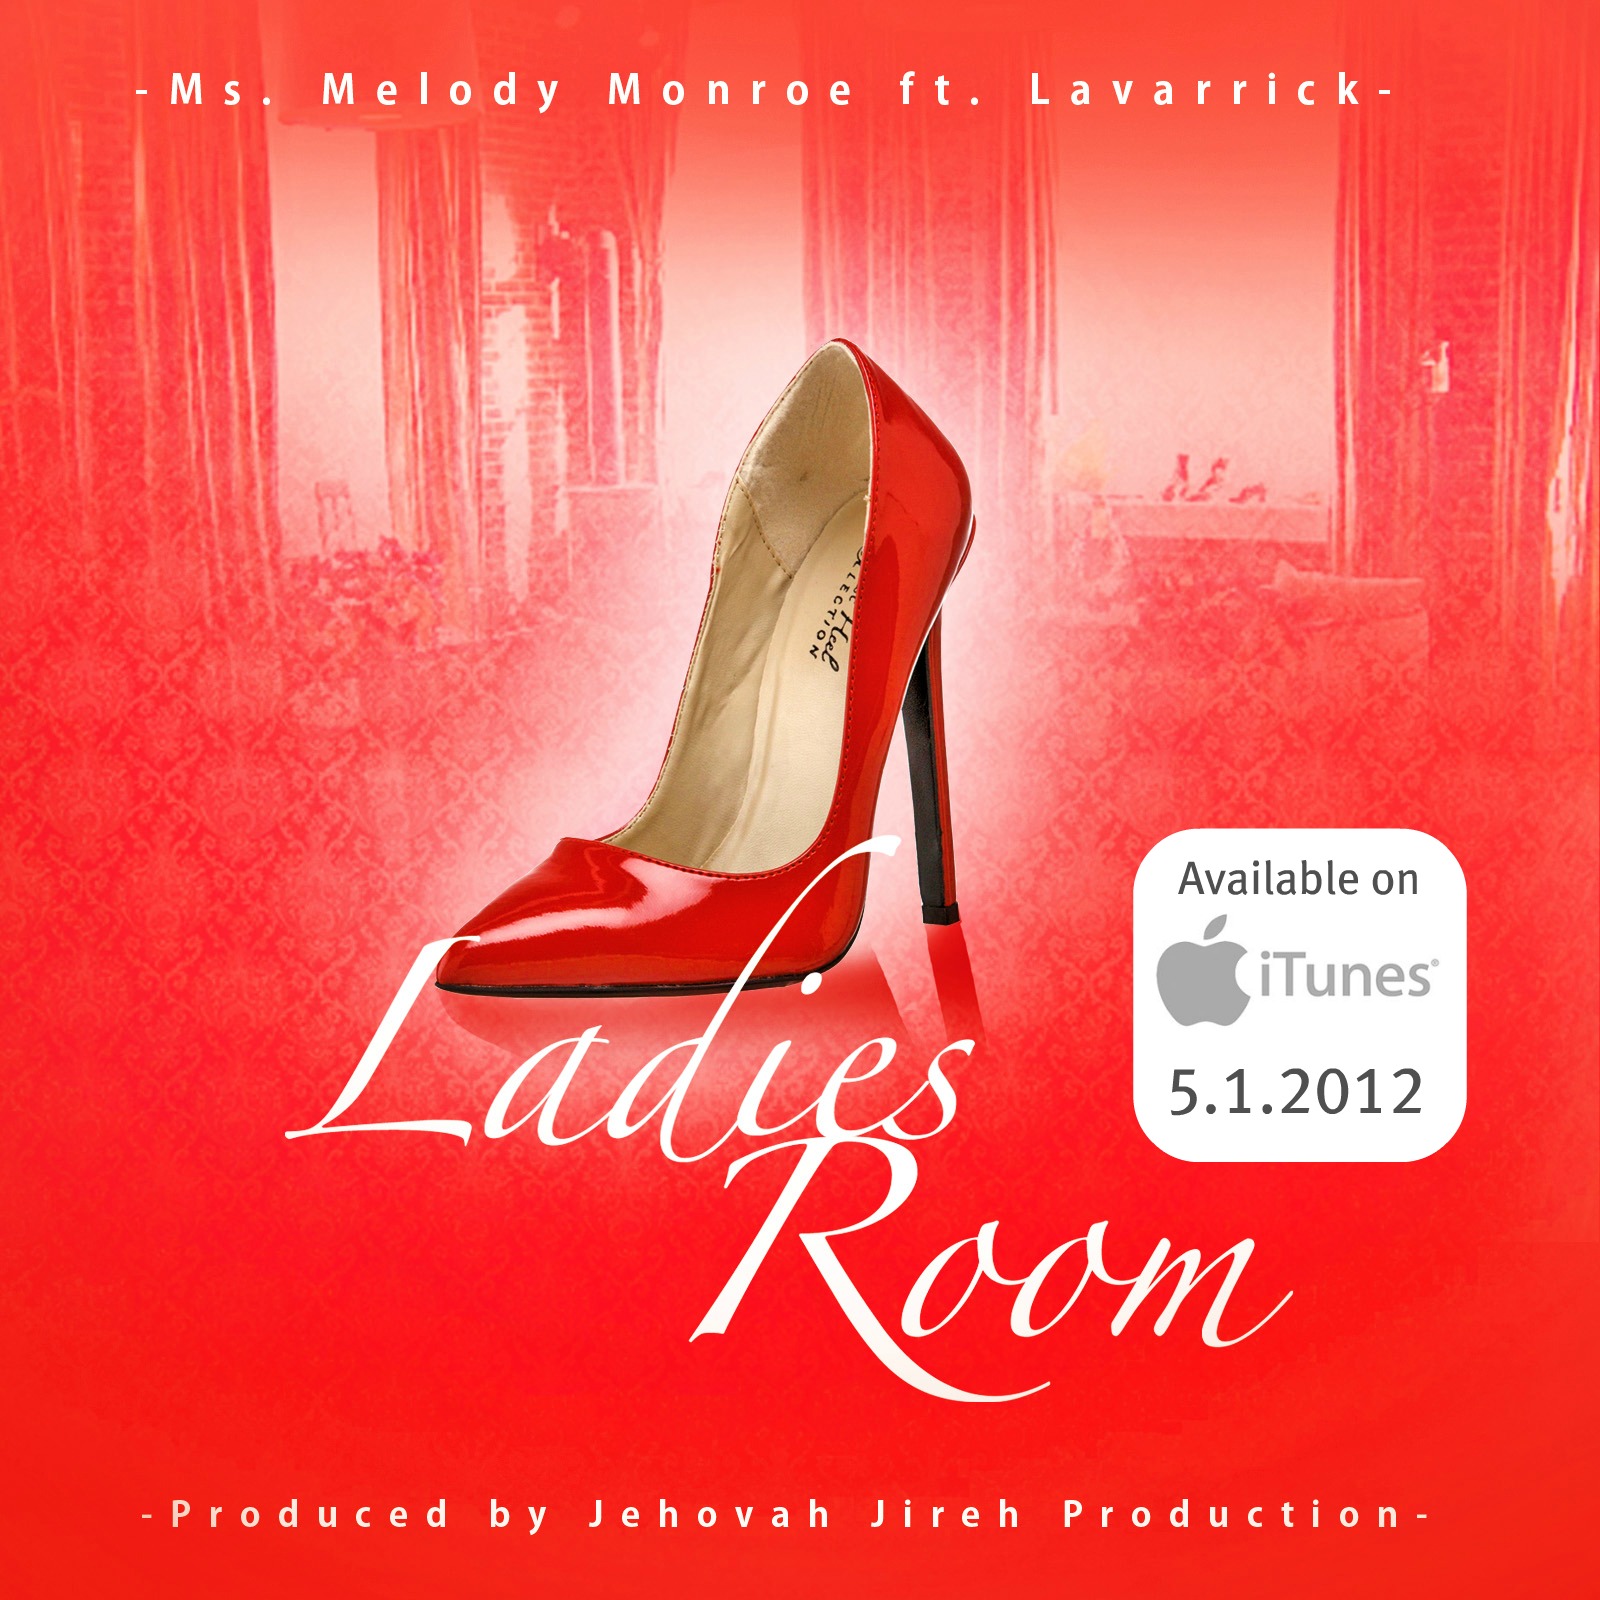 Ladies-Room-Cover-Promo